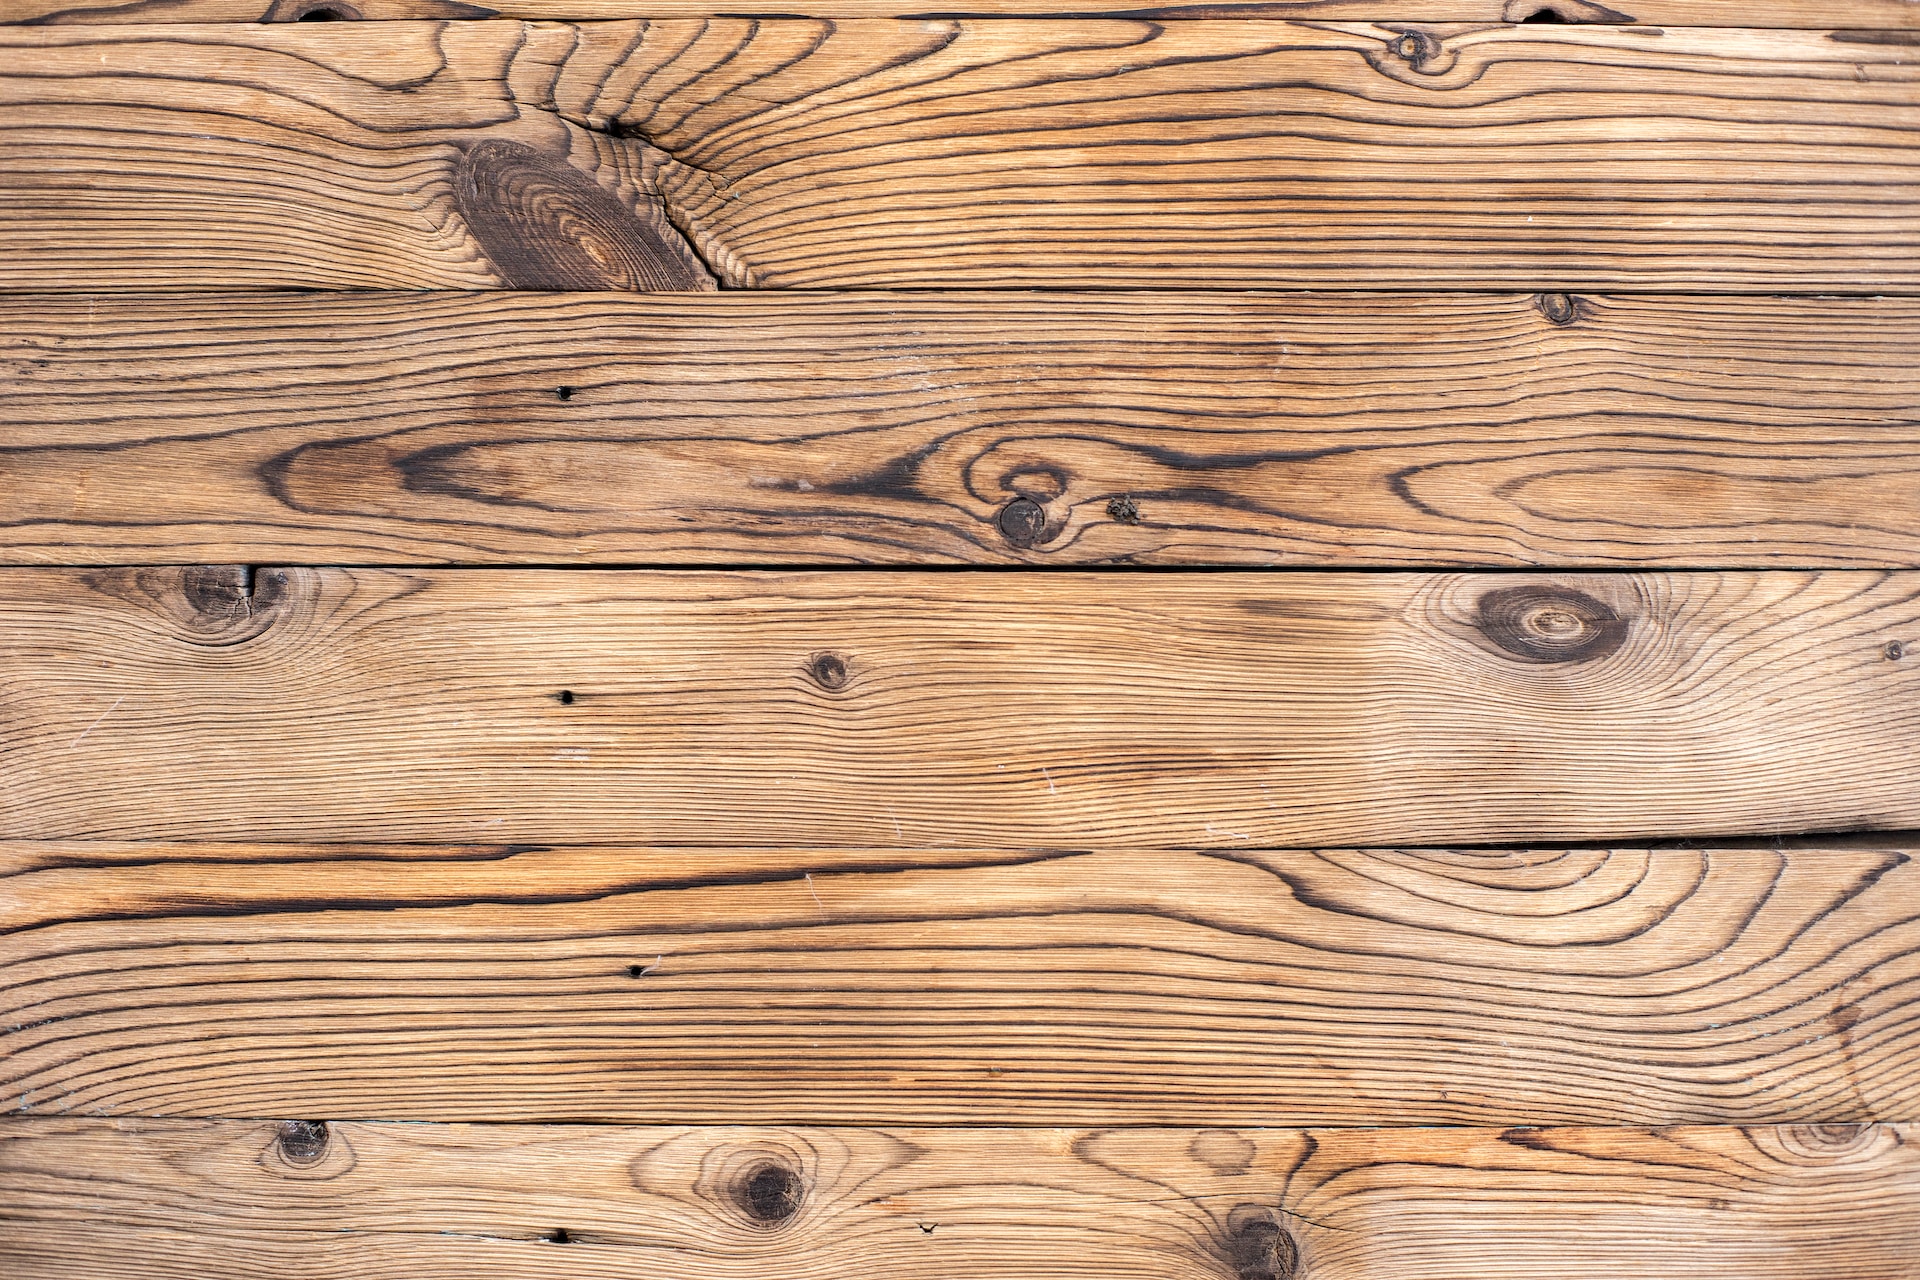 Holz wetterfest machen: Tipps und Tricks